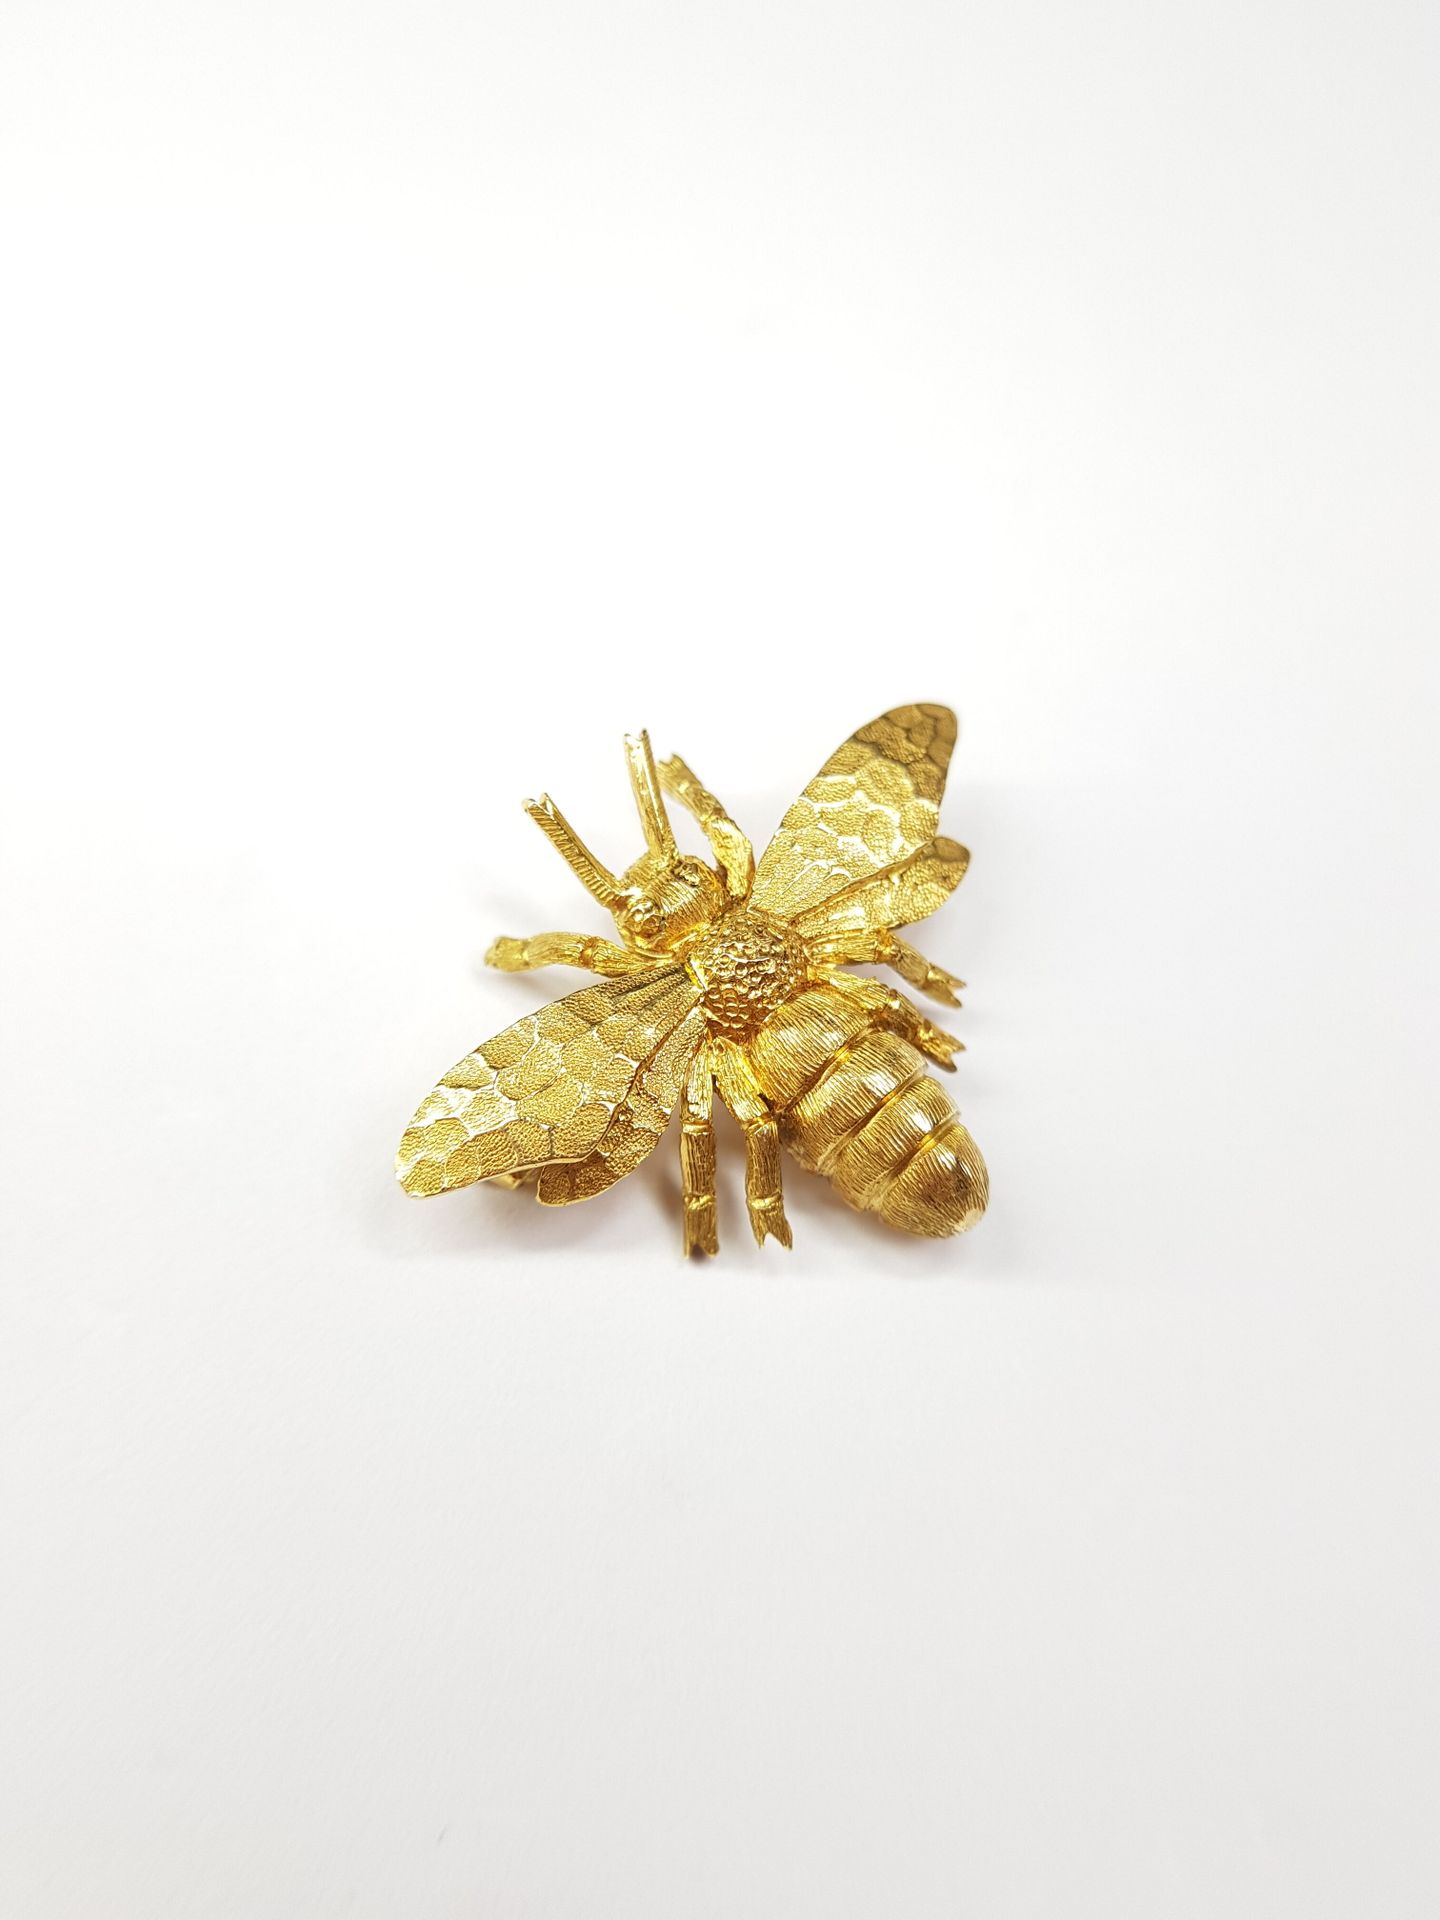 Null Un broche de oro de 750 ‰ con una abeja.

Peso : 6,53 g

Longitud : 2 cm